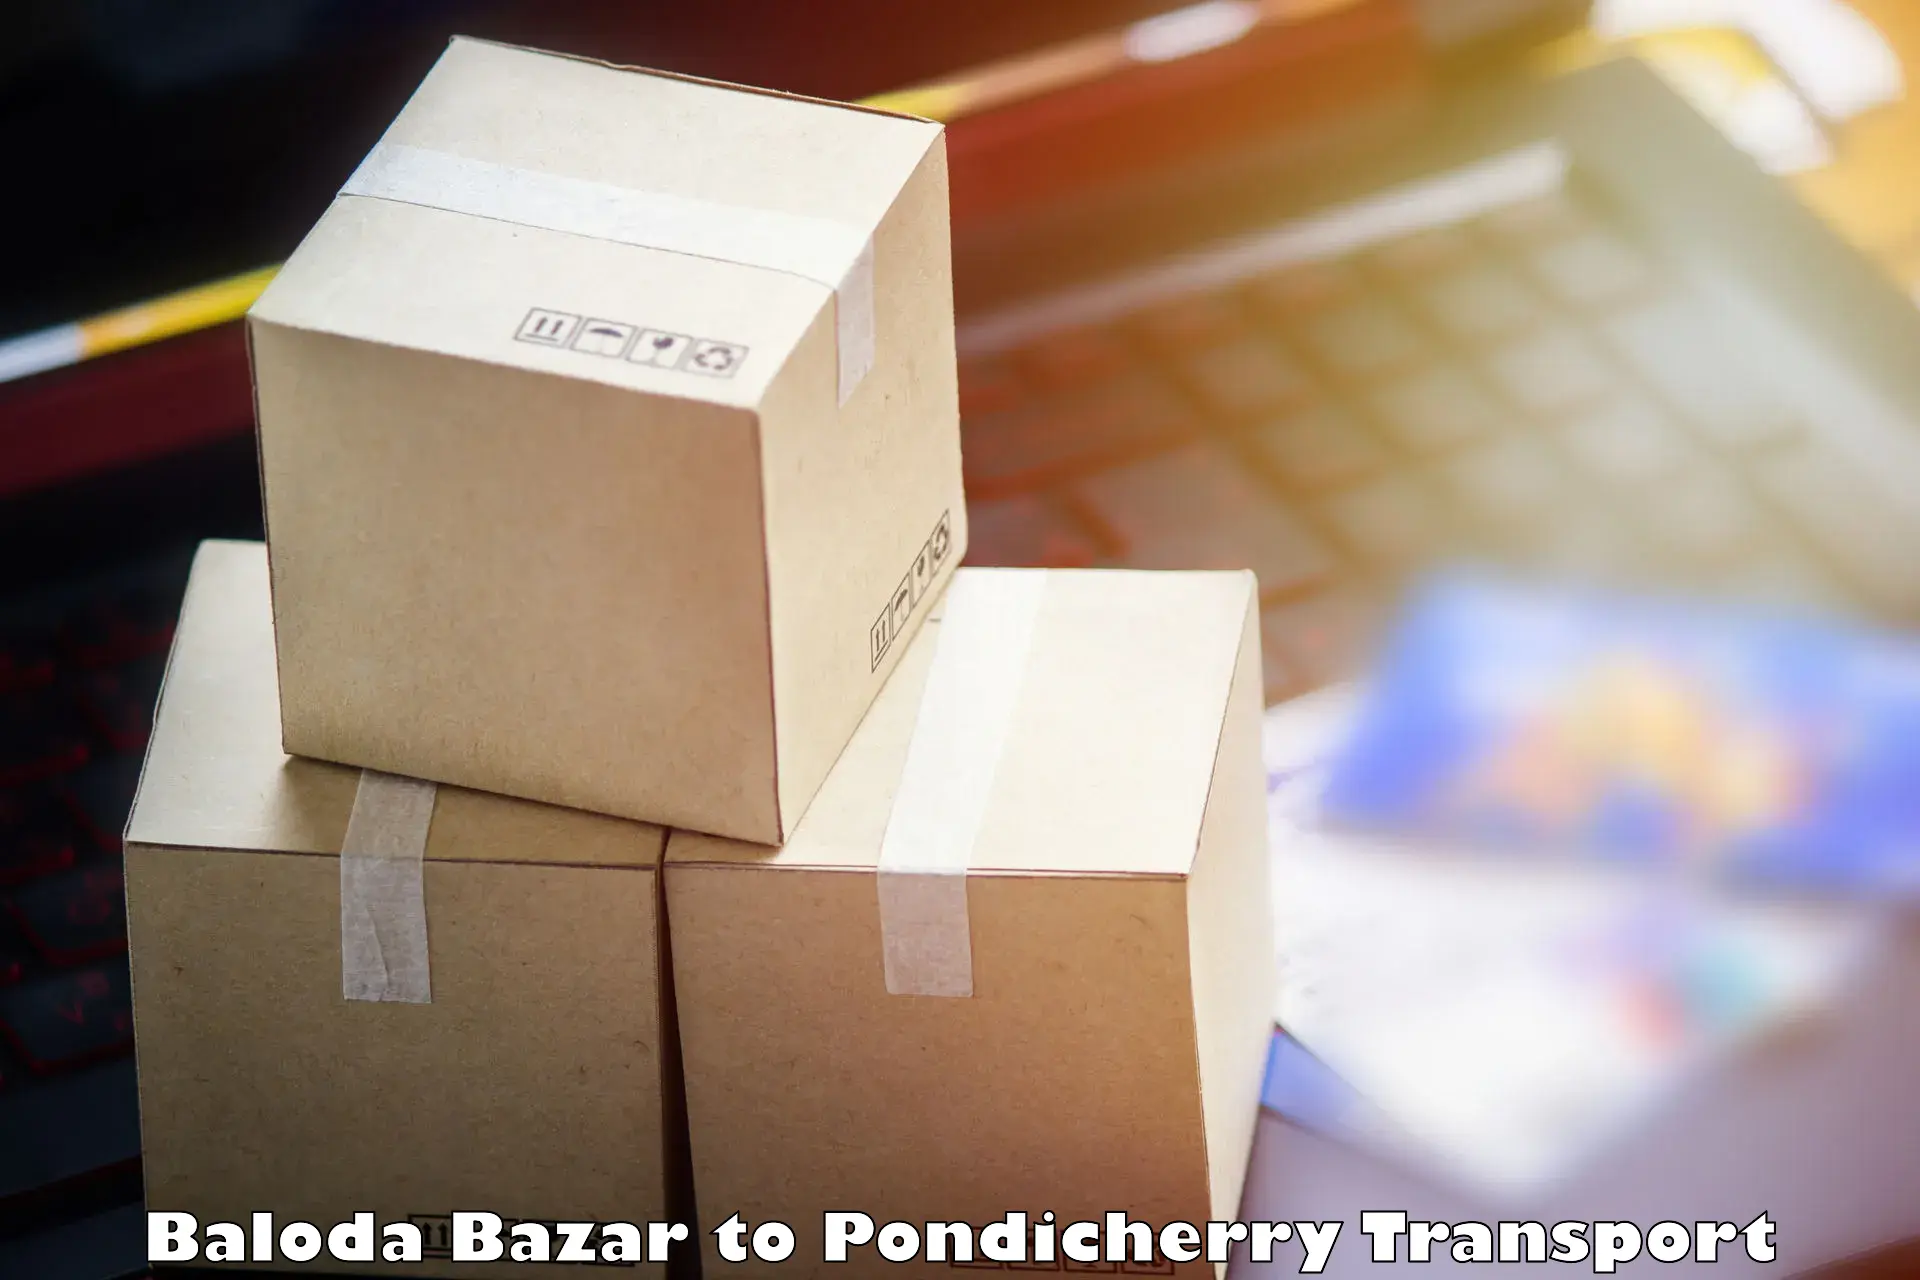 Transportation services Baloda Bazar to Pondicherry University